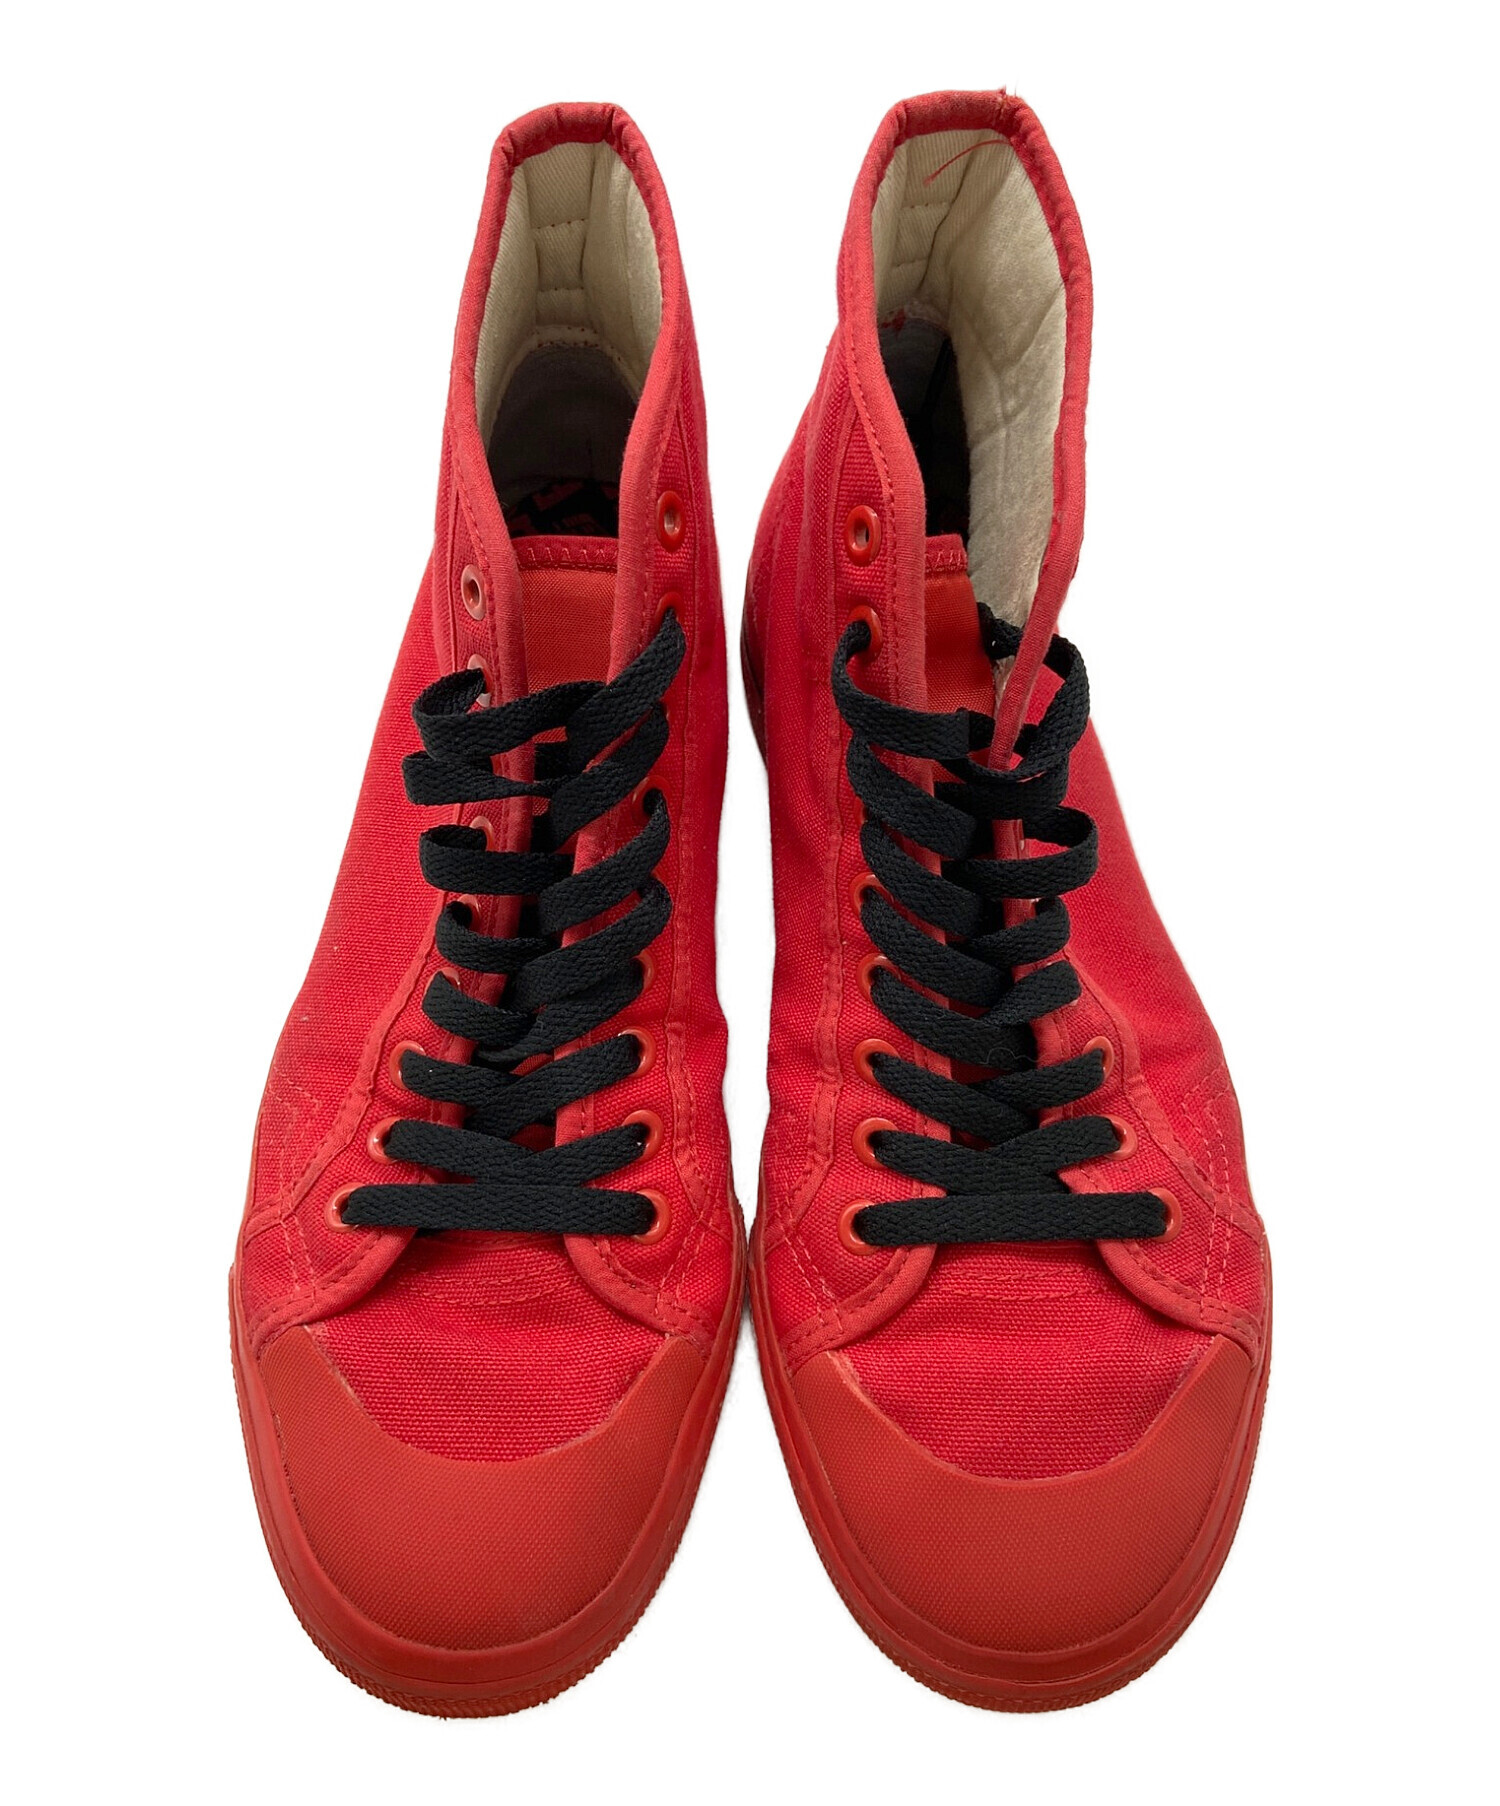 adidas×Raf Simons Tomato Red (アディダス×ラフシモンズ) ハイカットスニーカー レッド サイズ:26.5cm